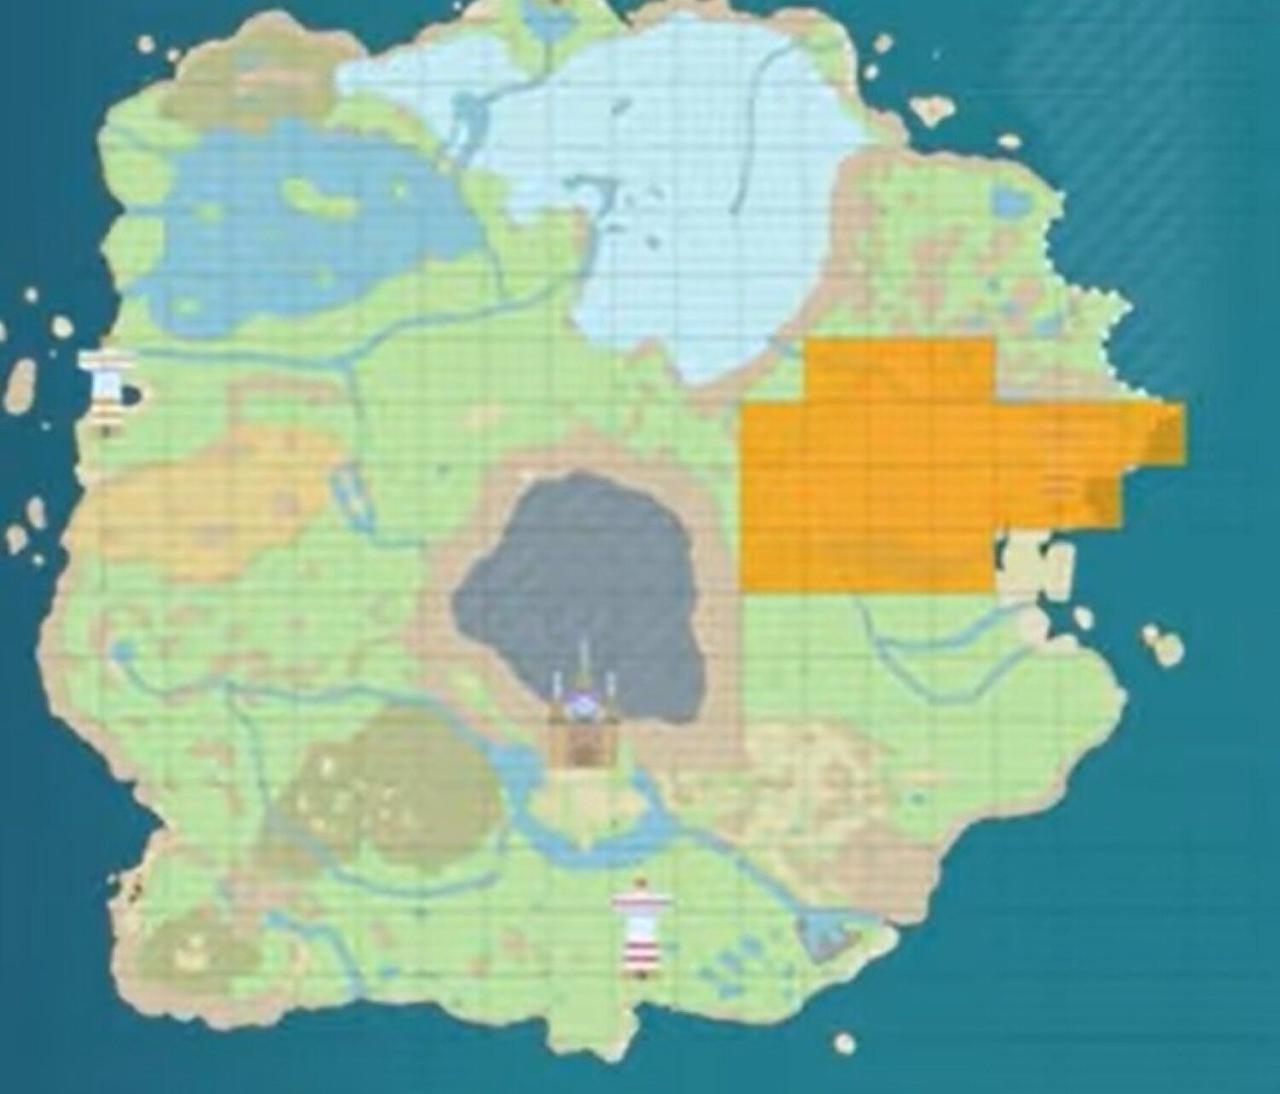 Ubicación de Carkol en el mapa del juego Pokémon Escarlata y Violeta.